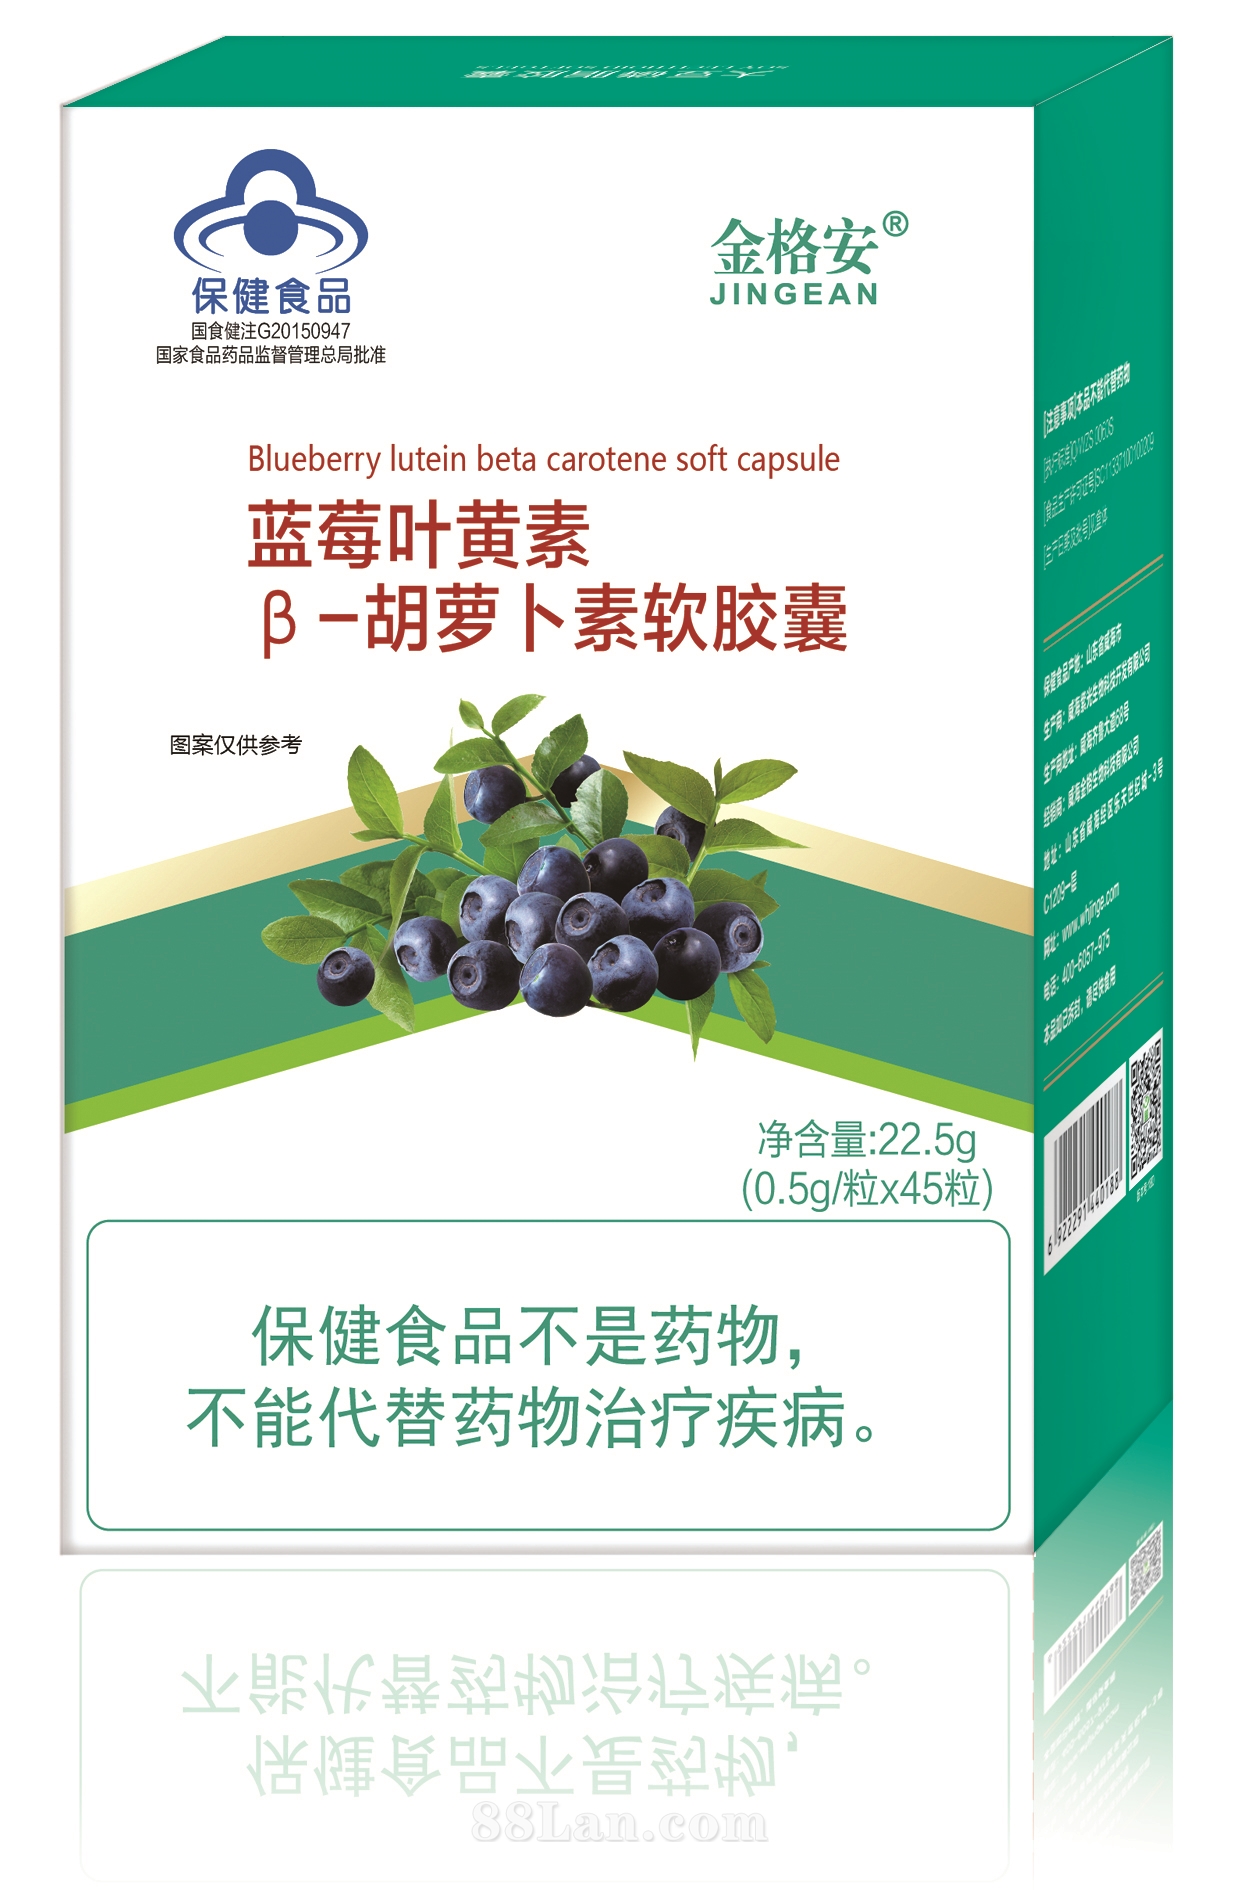 藍莓葉黃素β-胡蘿卜素軟膠囊-單盒